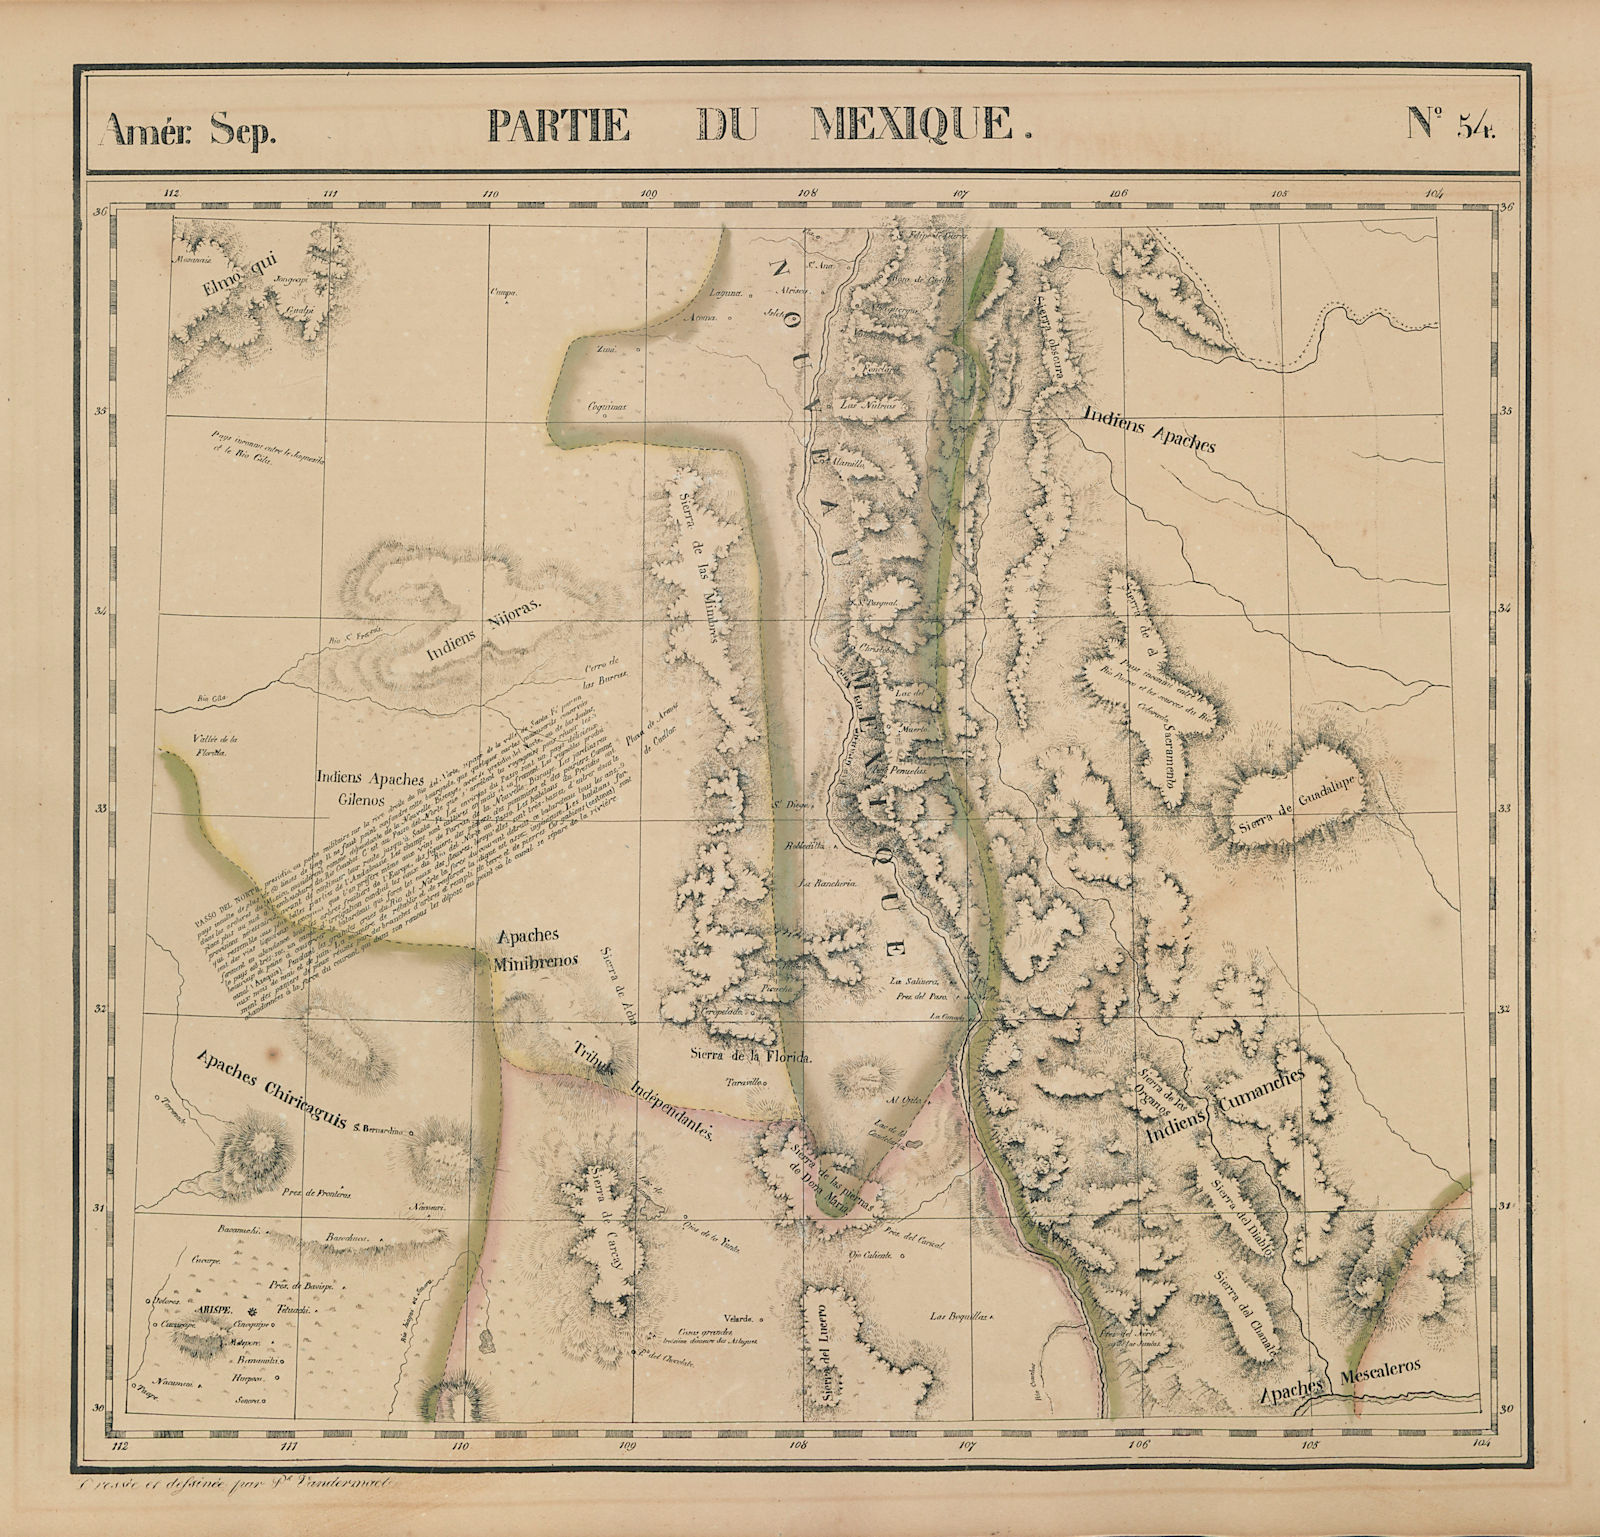 Amér Sep Partie du Mexique #54 New Mexico Texas Rio Grande VANDERMAELEN 1827 map